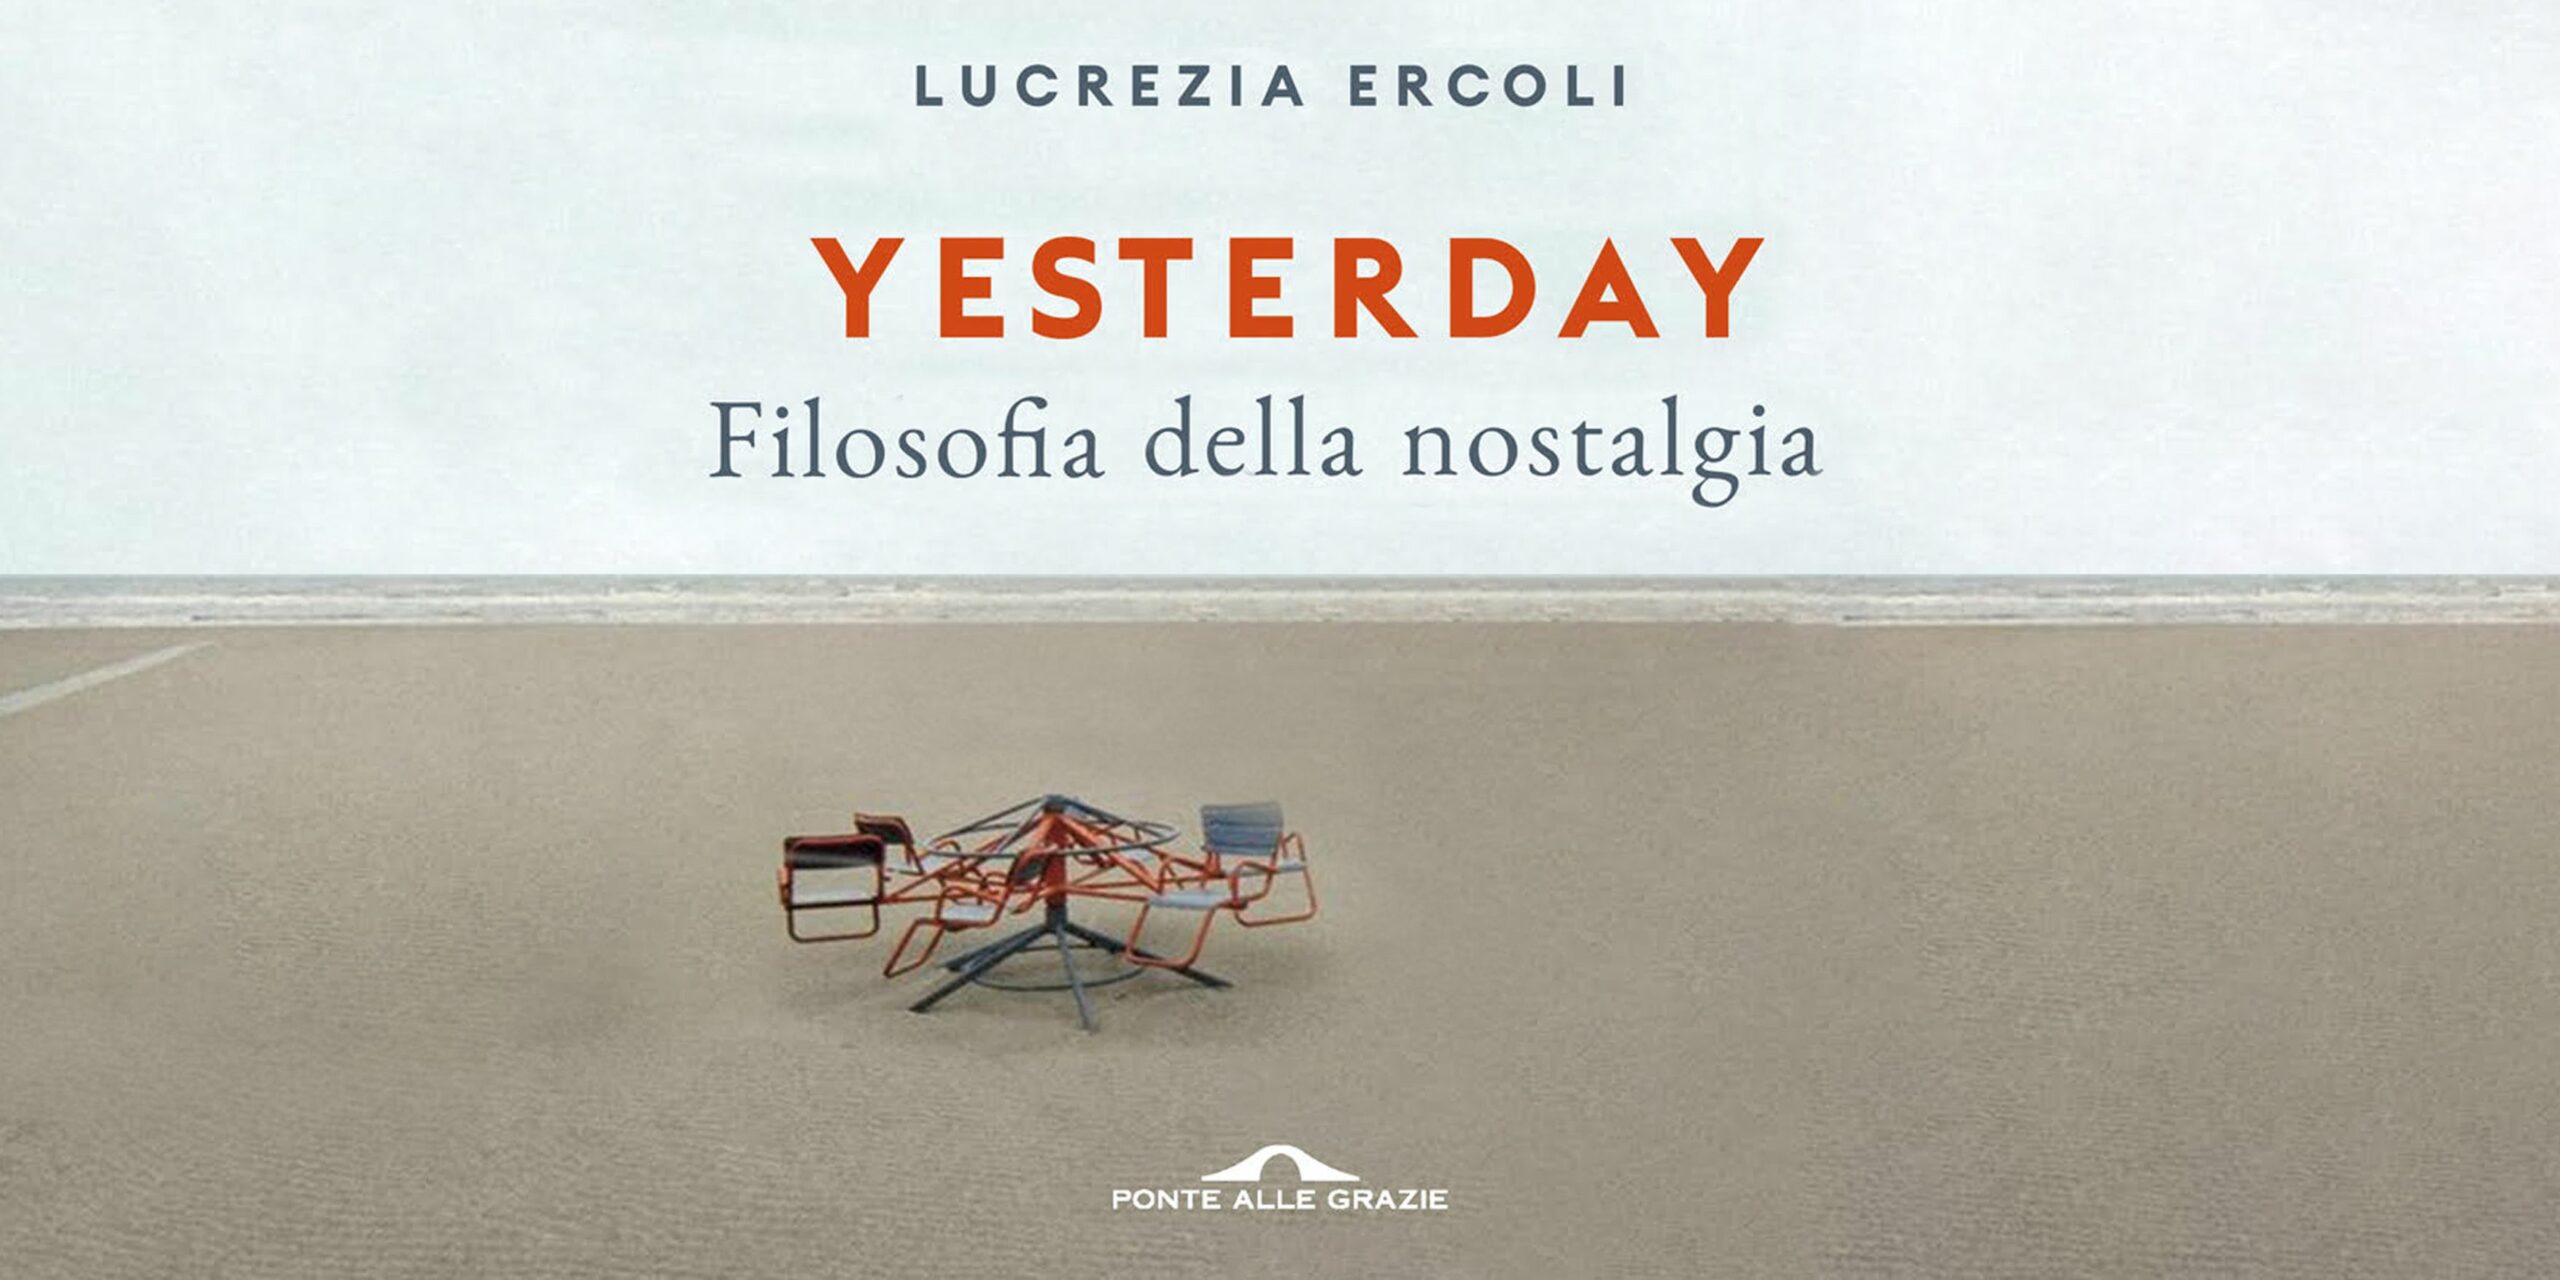 Yesterday. Filosofia della nostalgia" in libreria - Lucrezia Ercoli